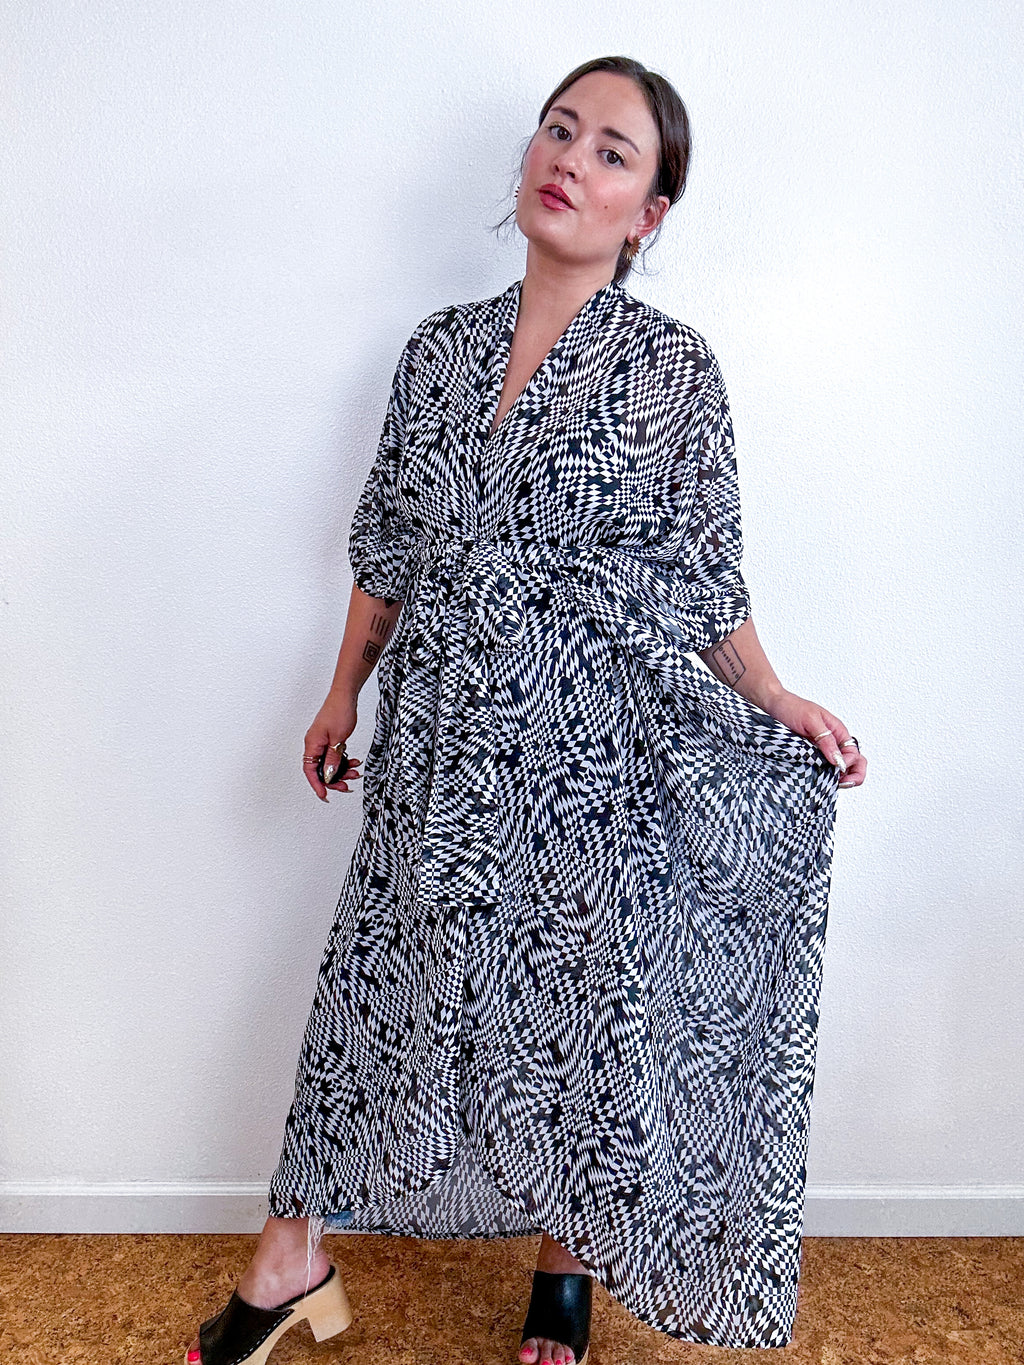 Print High Low Kimono Black White Wavy Checker Chiffon